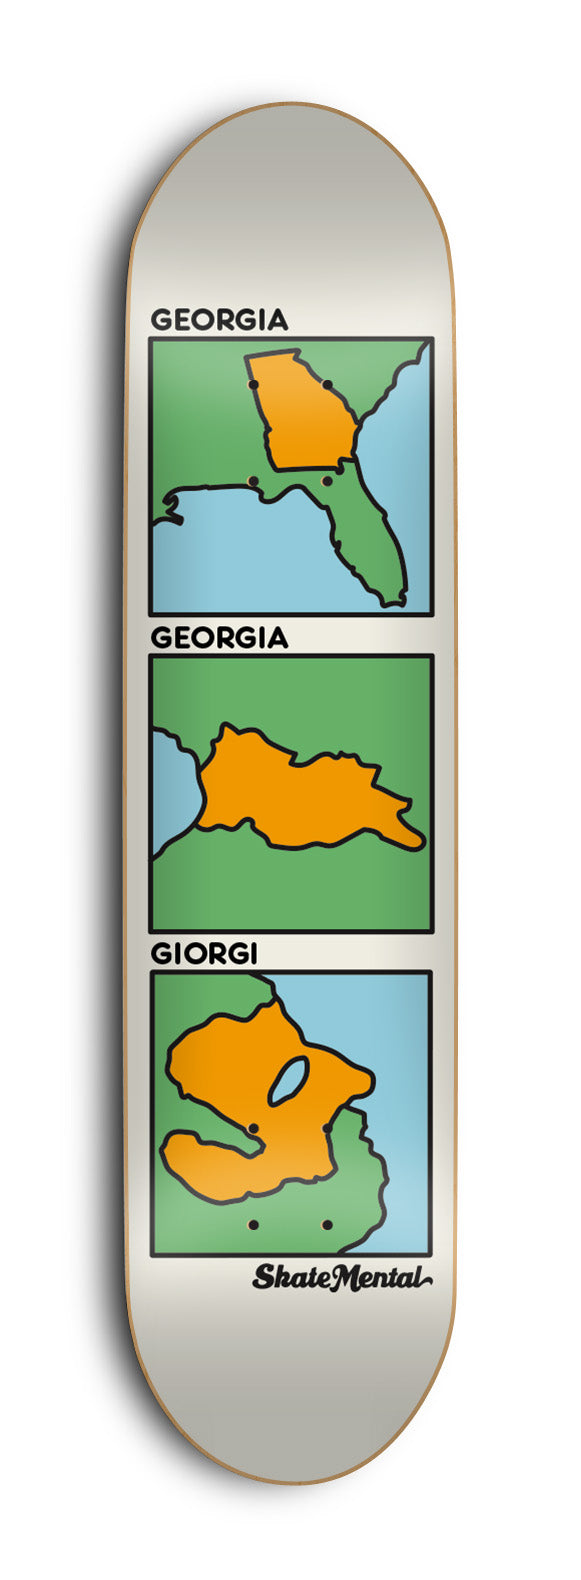 Giorgi - Georgia